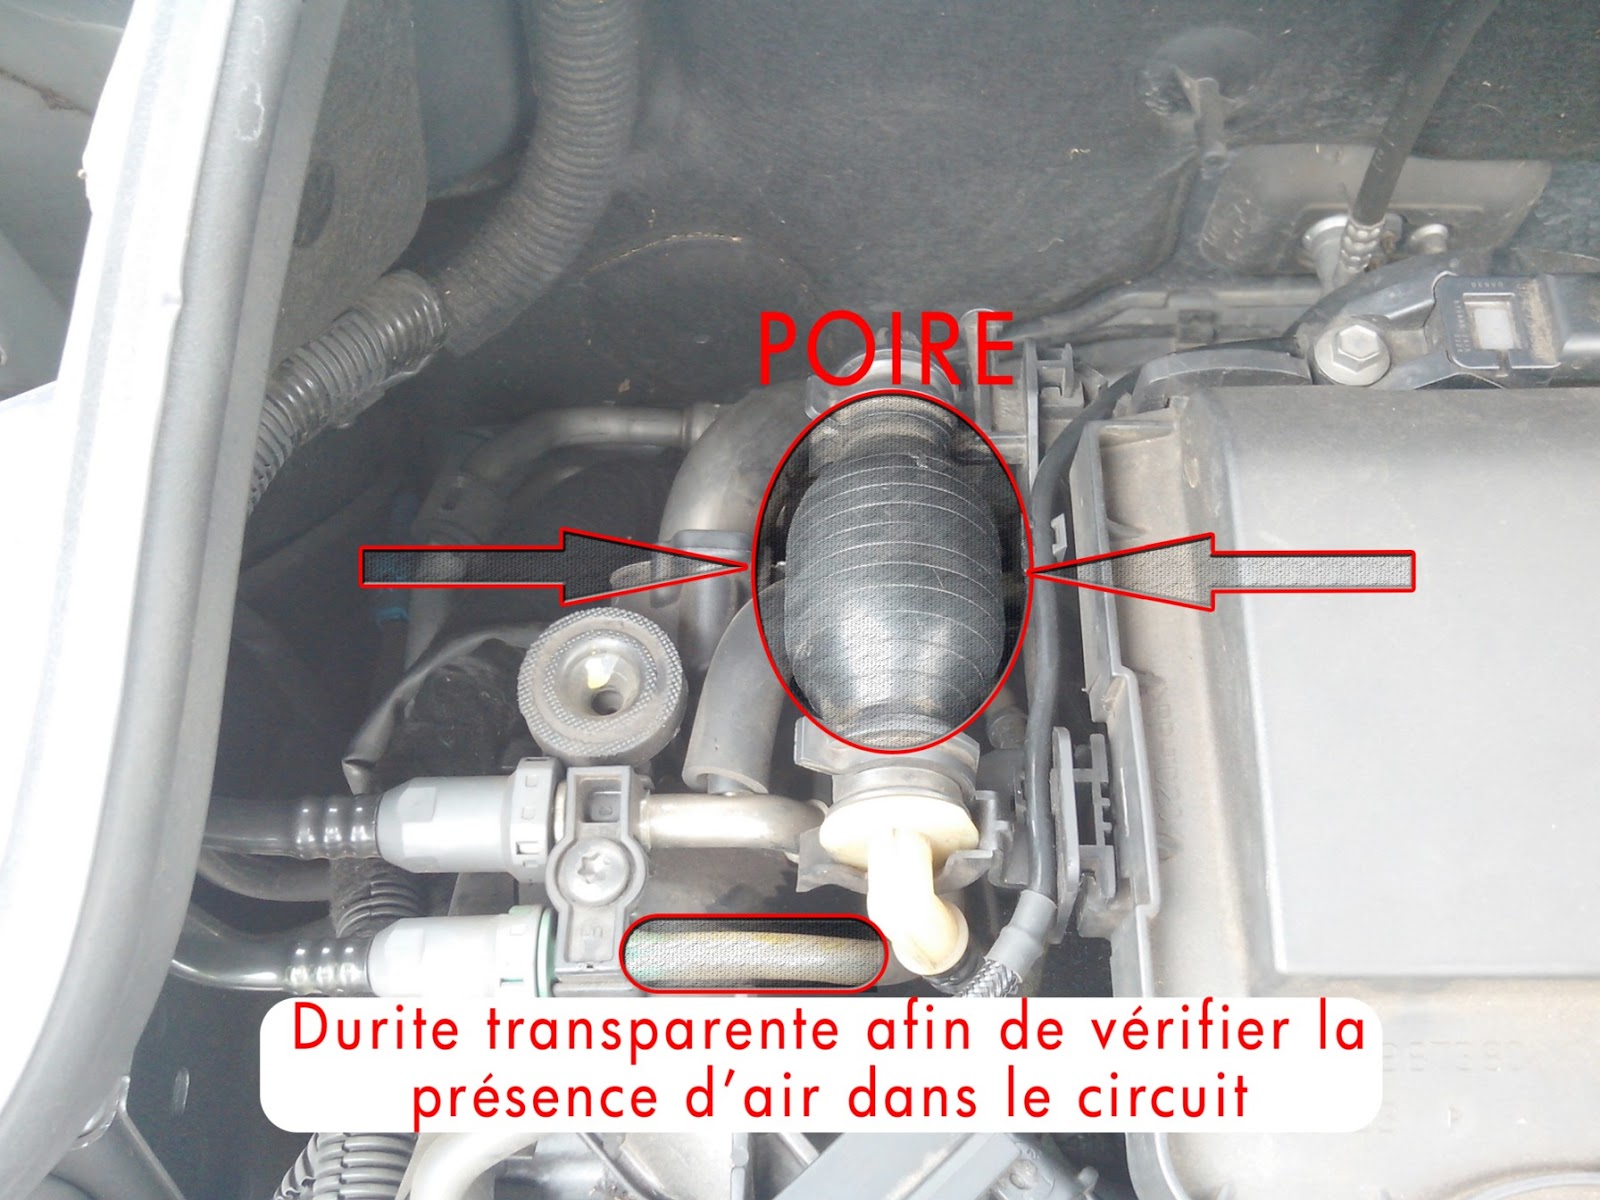 207 : Problème poire d'amorcage - Peugeot - Mécanique / Électronique -  Forum Technique - Forum Auto